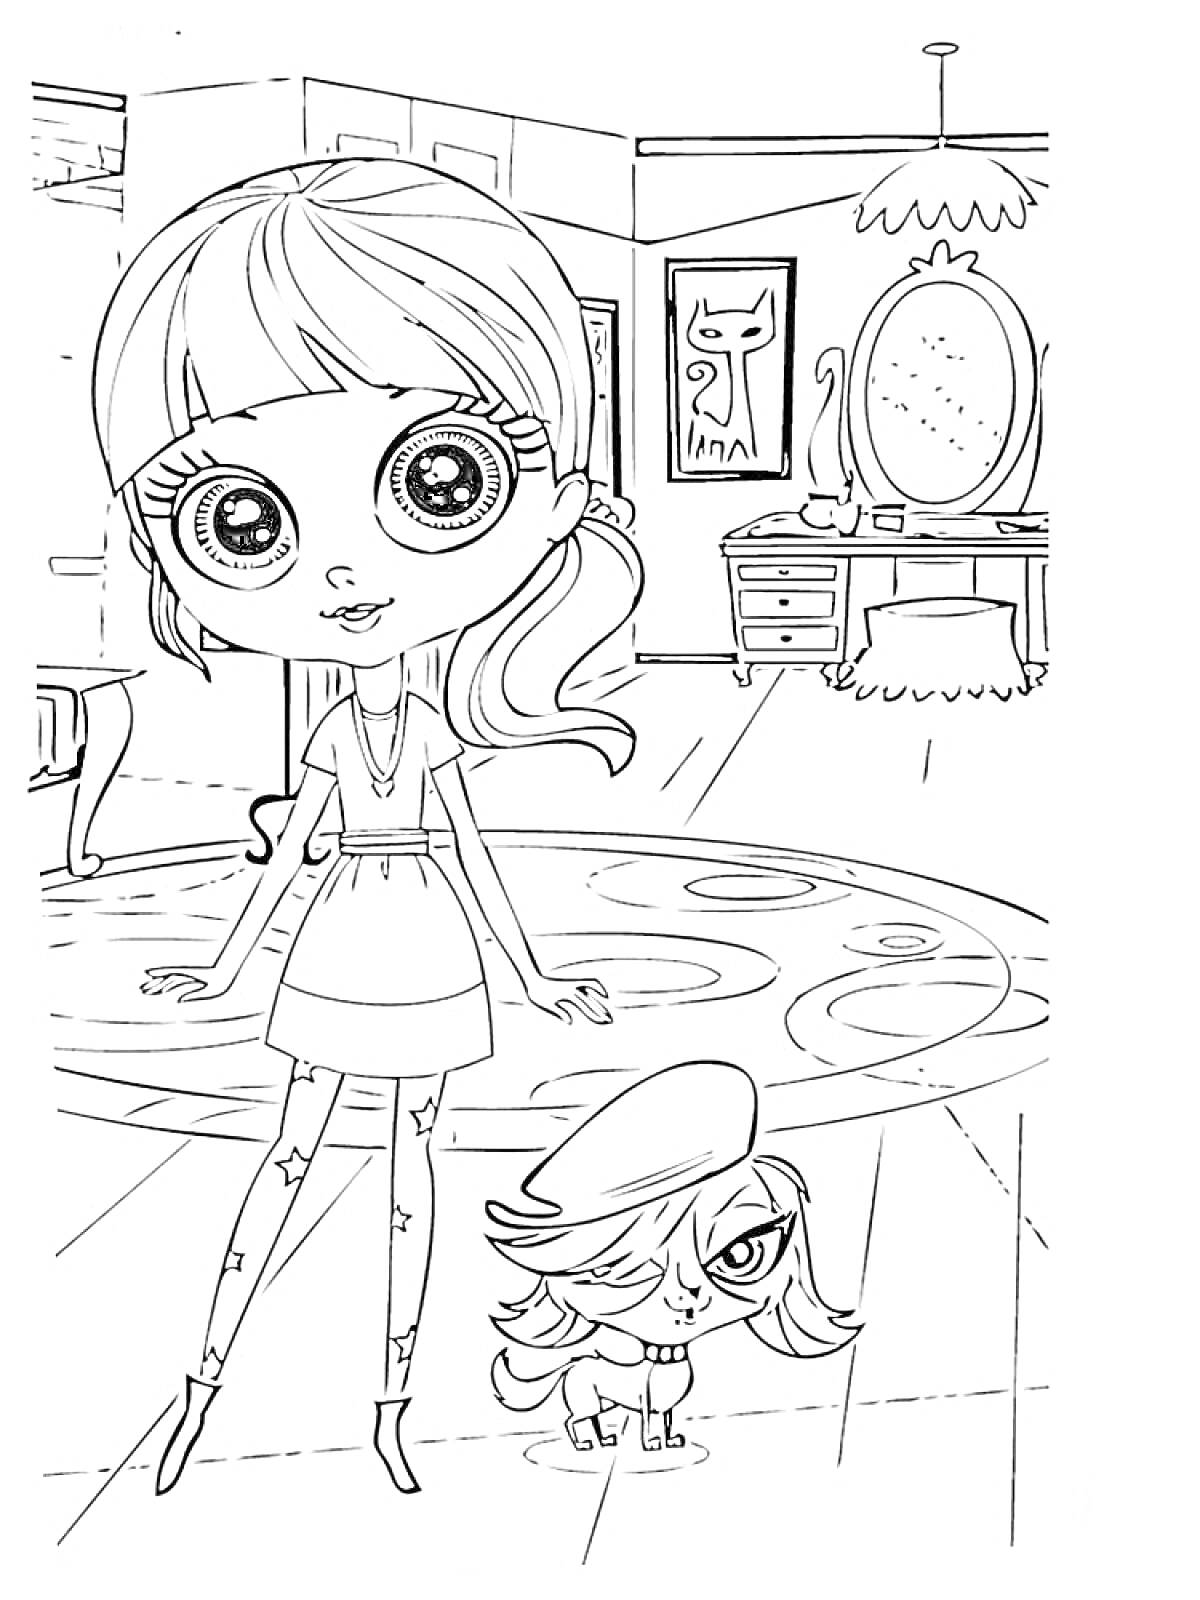 Девочка с большими глазами и хвостиком, стоящая рядом с питомцем в комнате с зеркалом и столом